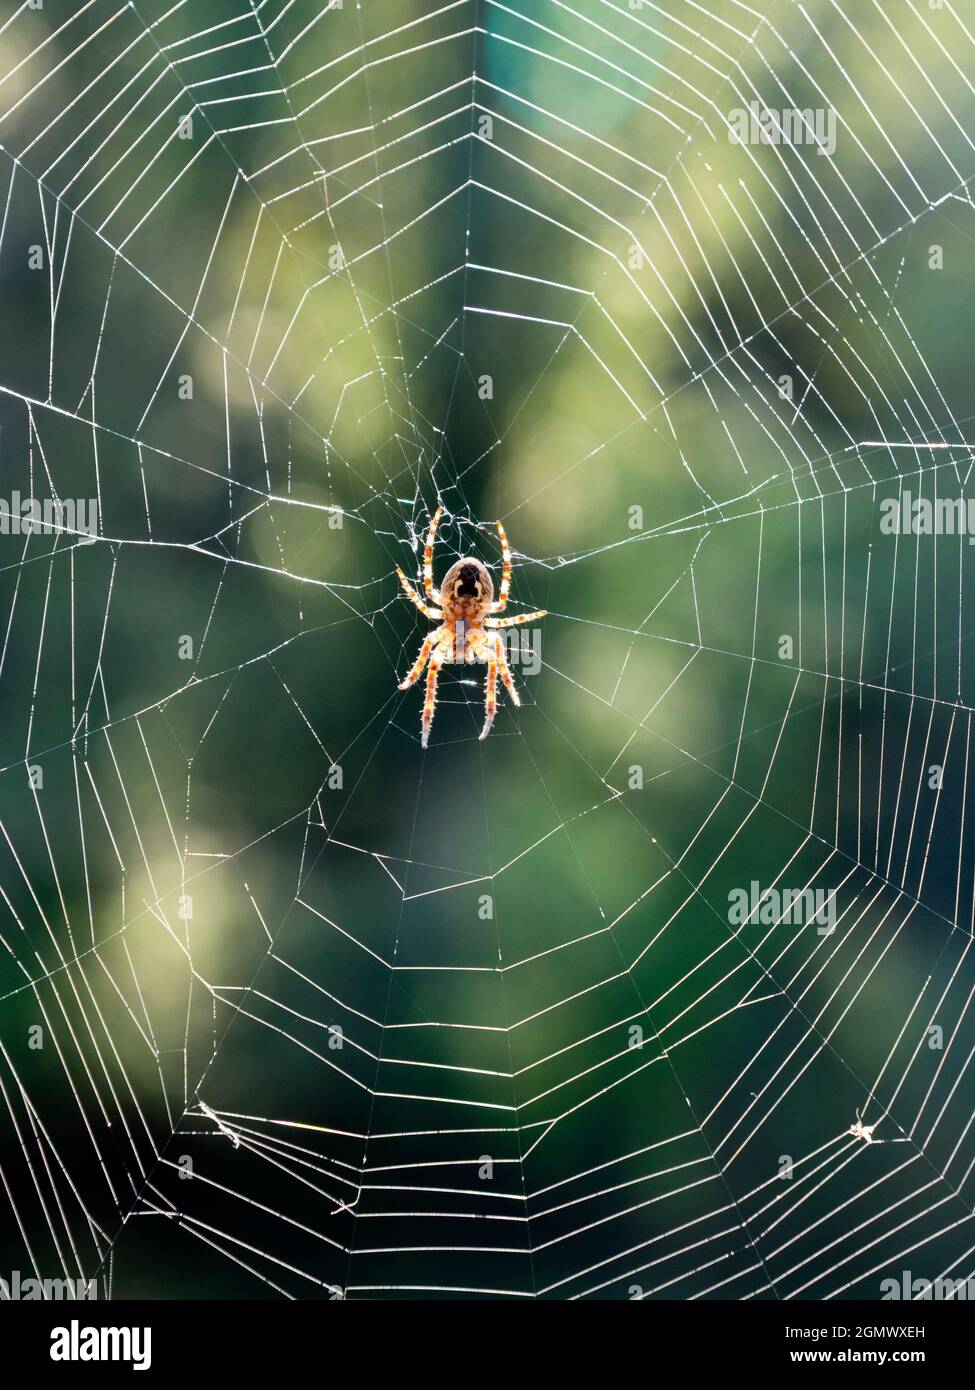 Abingdon, Inghilterra - 26 agosto 2019; non per arachnophobes! Ho avvistato questo incredibile, traslucido ragno casa del Regno Unito, che gira il suo web da St Helen's Wharf Foto Stock